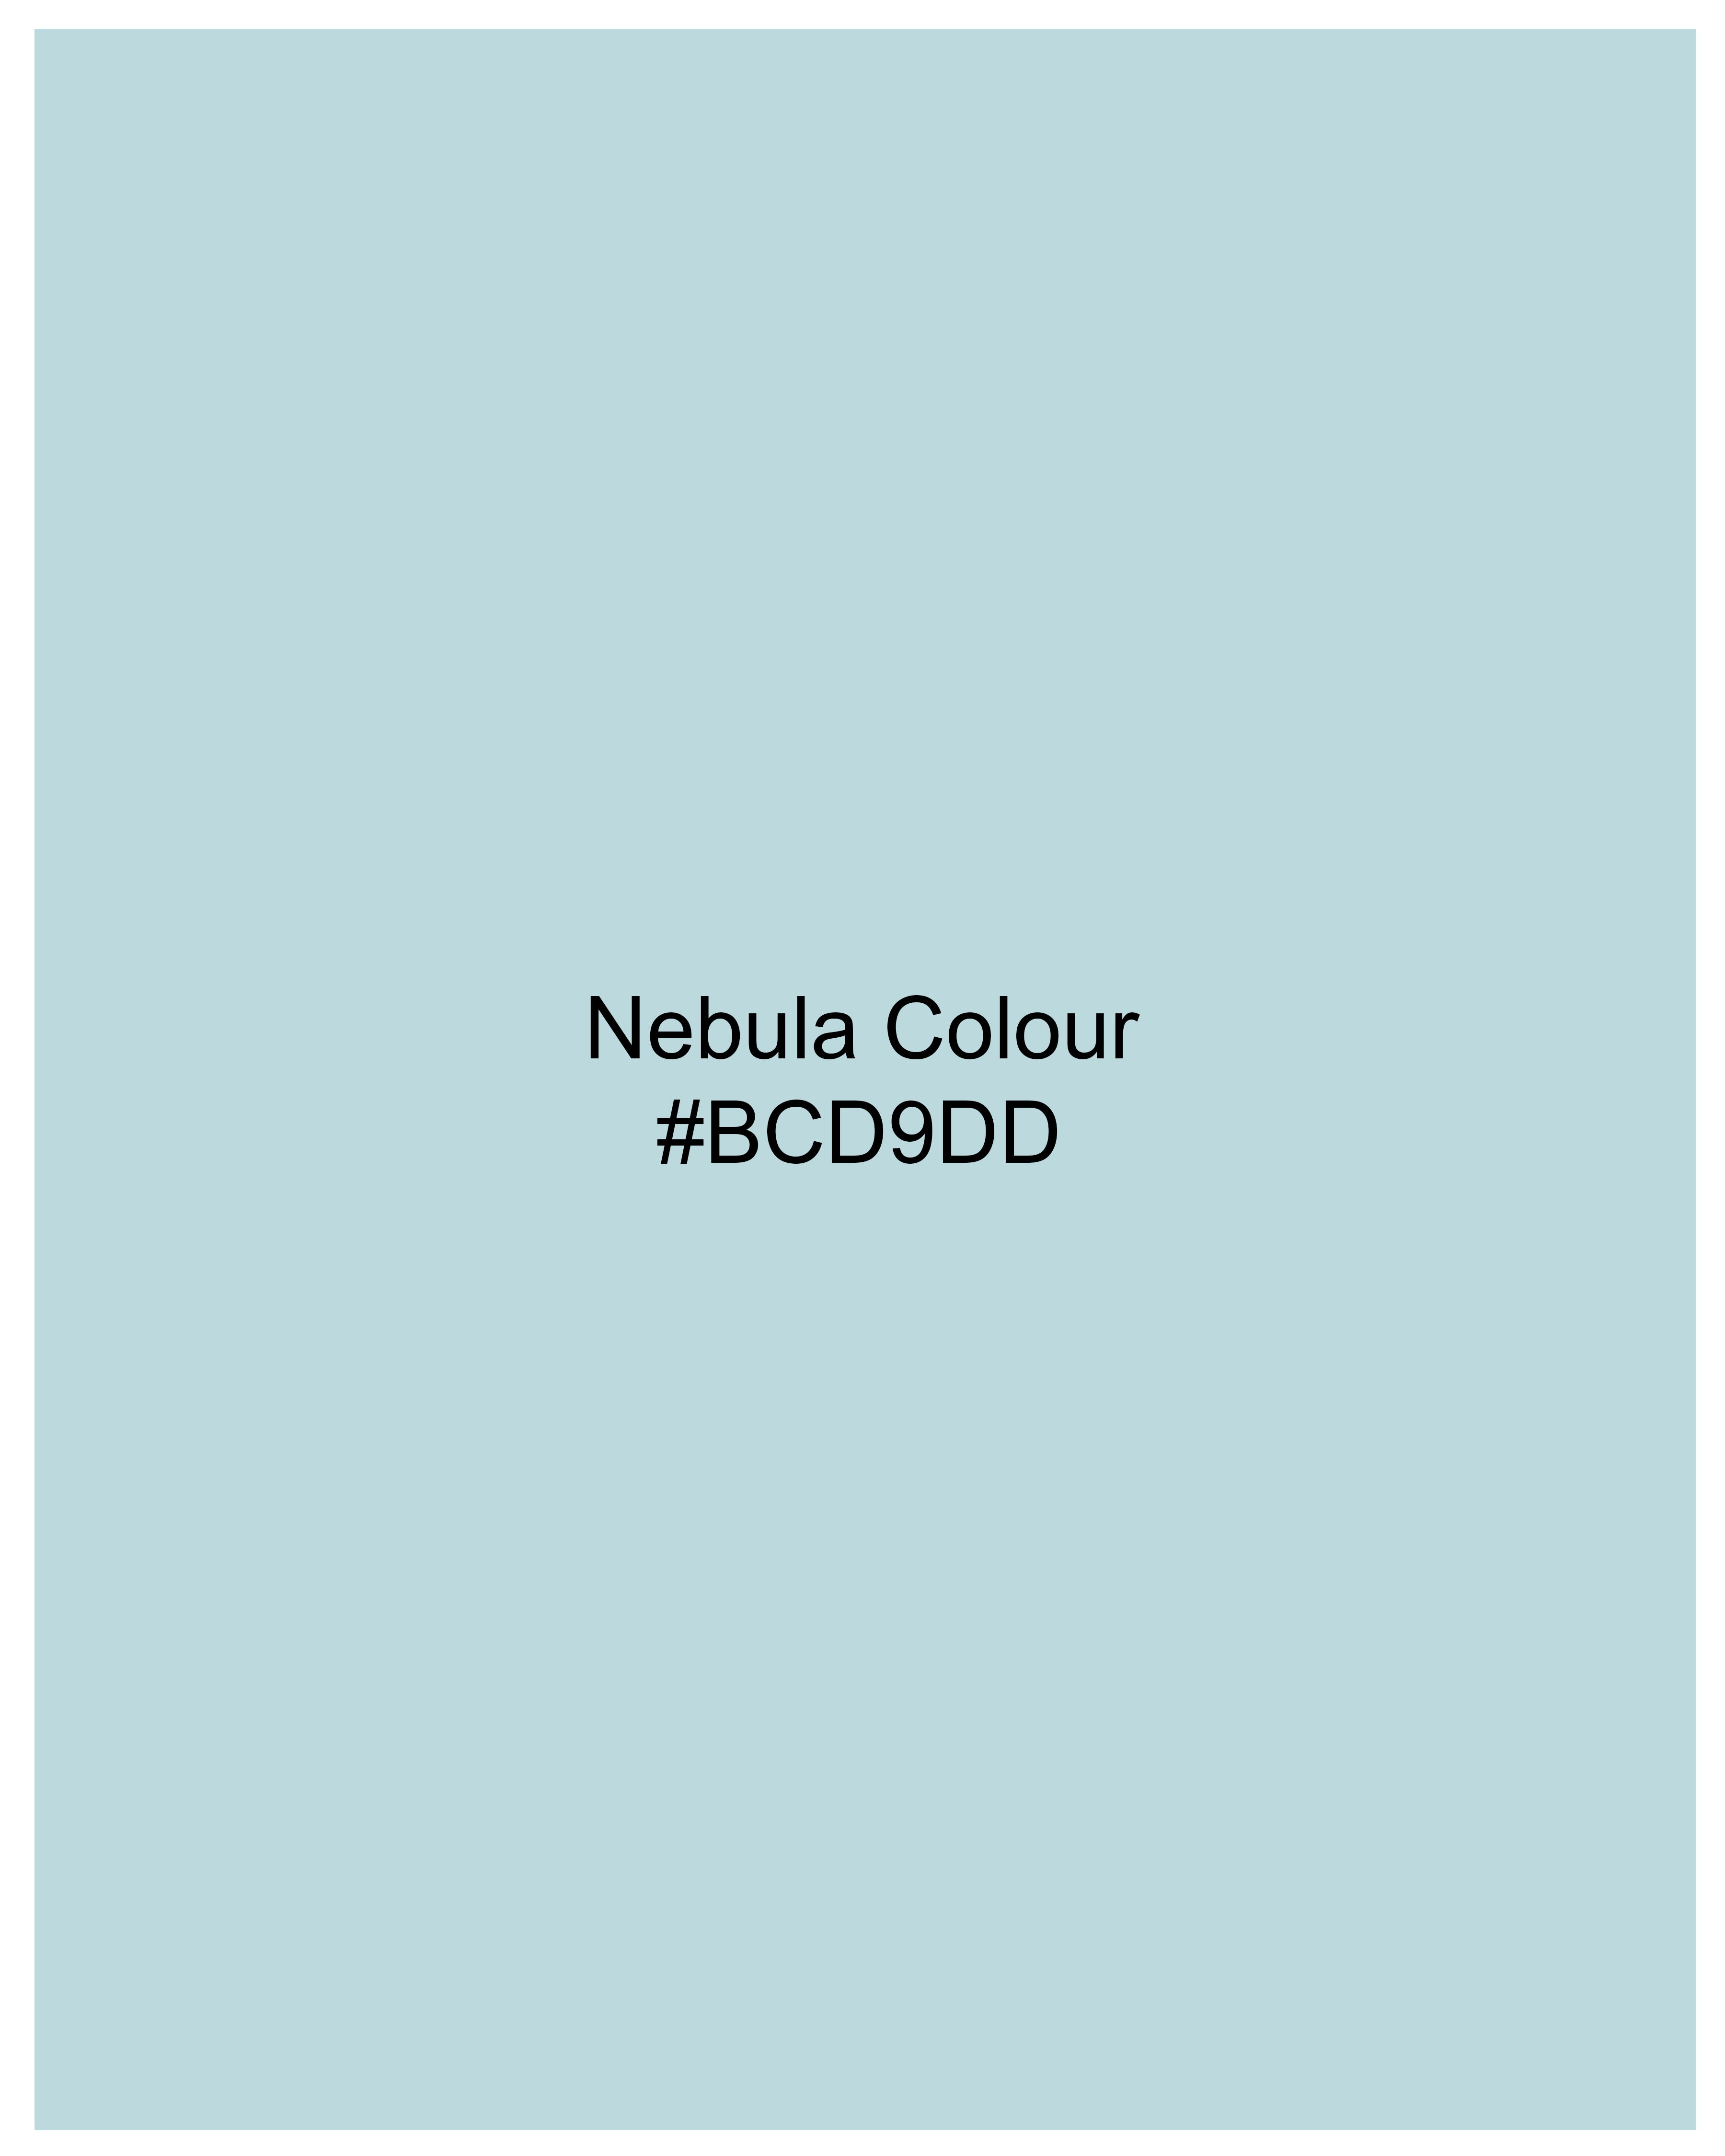 Nebula Blue Royal Oxford Shirt 9838-38, 9838-H-38, 9838-39, 9838-H-39, 9838-40, 9838-H-40, 9838-42, 9838-H-42, 9838-44, 9838-H-44, 9838-46, 9838-H-46, 9838-48, 9838-H-48, 9838-50, 9838-H-50, 9838-52, 9838-H-52